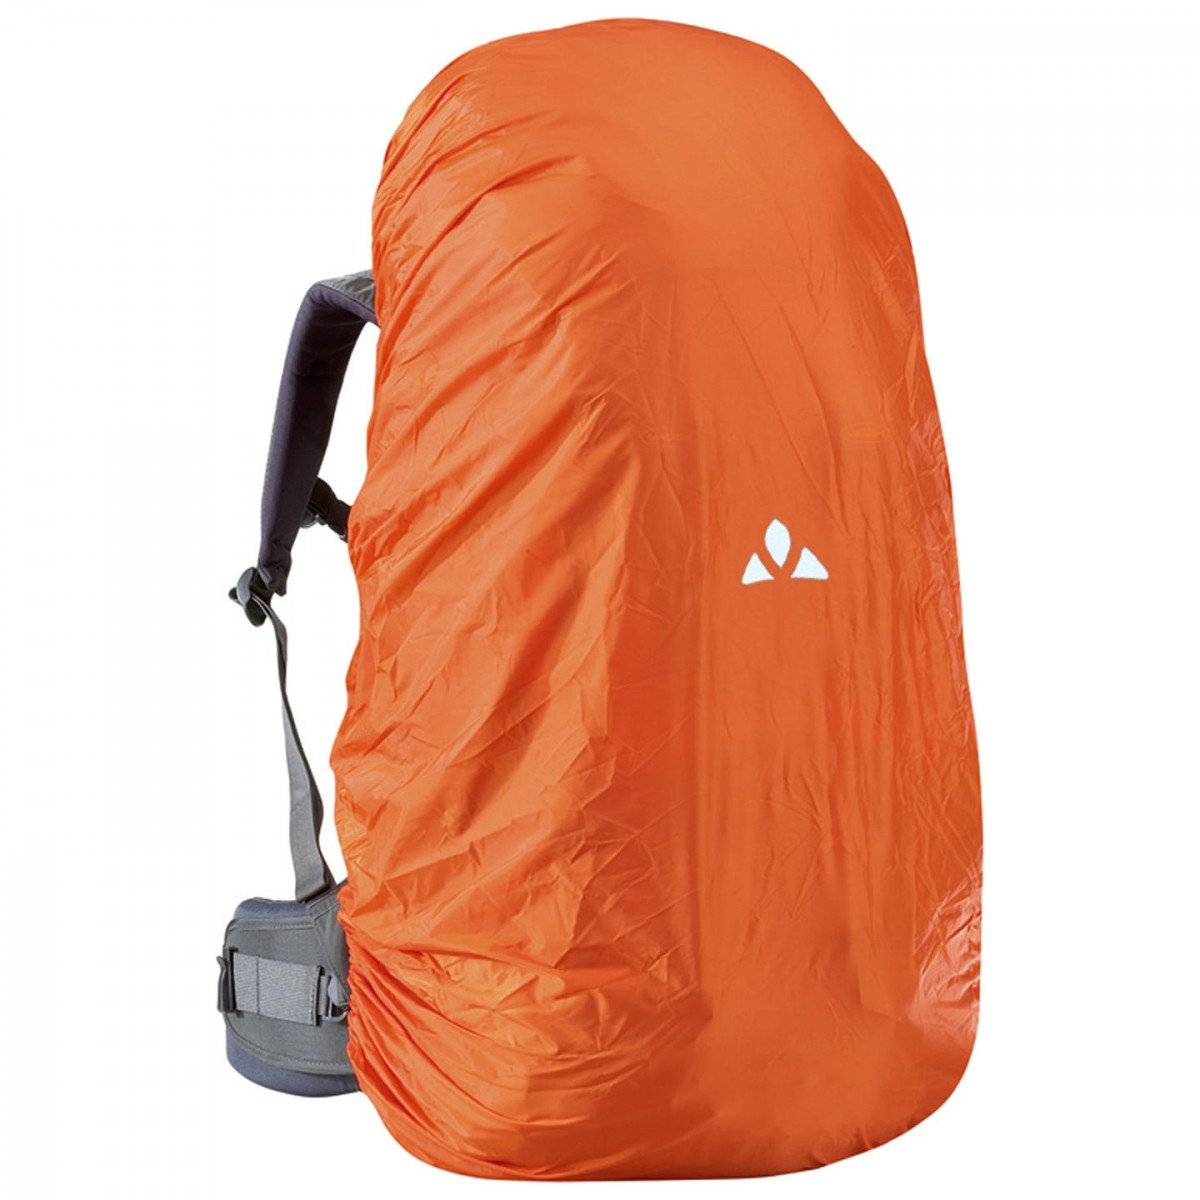 Чехол для рюкзака VAUDE Raincover for backpacks 55-80 л, 227, orange, 14869 чехол для рюкзака vaude raincover for backpacks 55 80 л 227 orange 14869